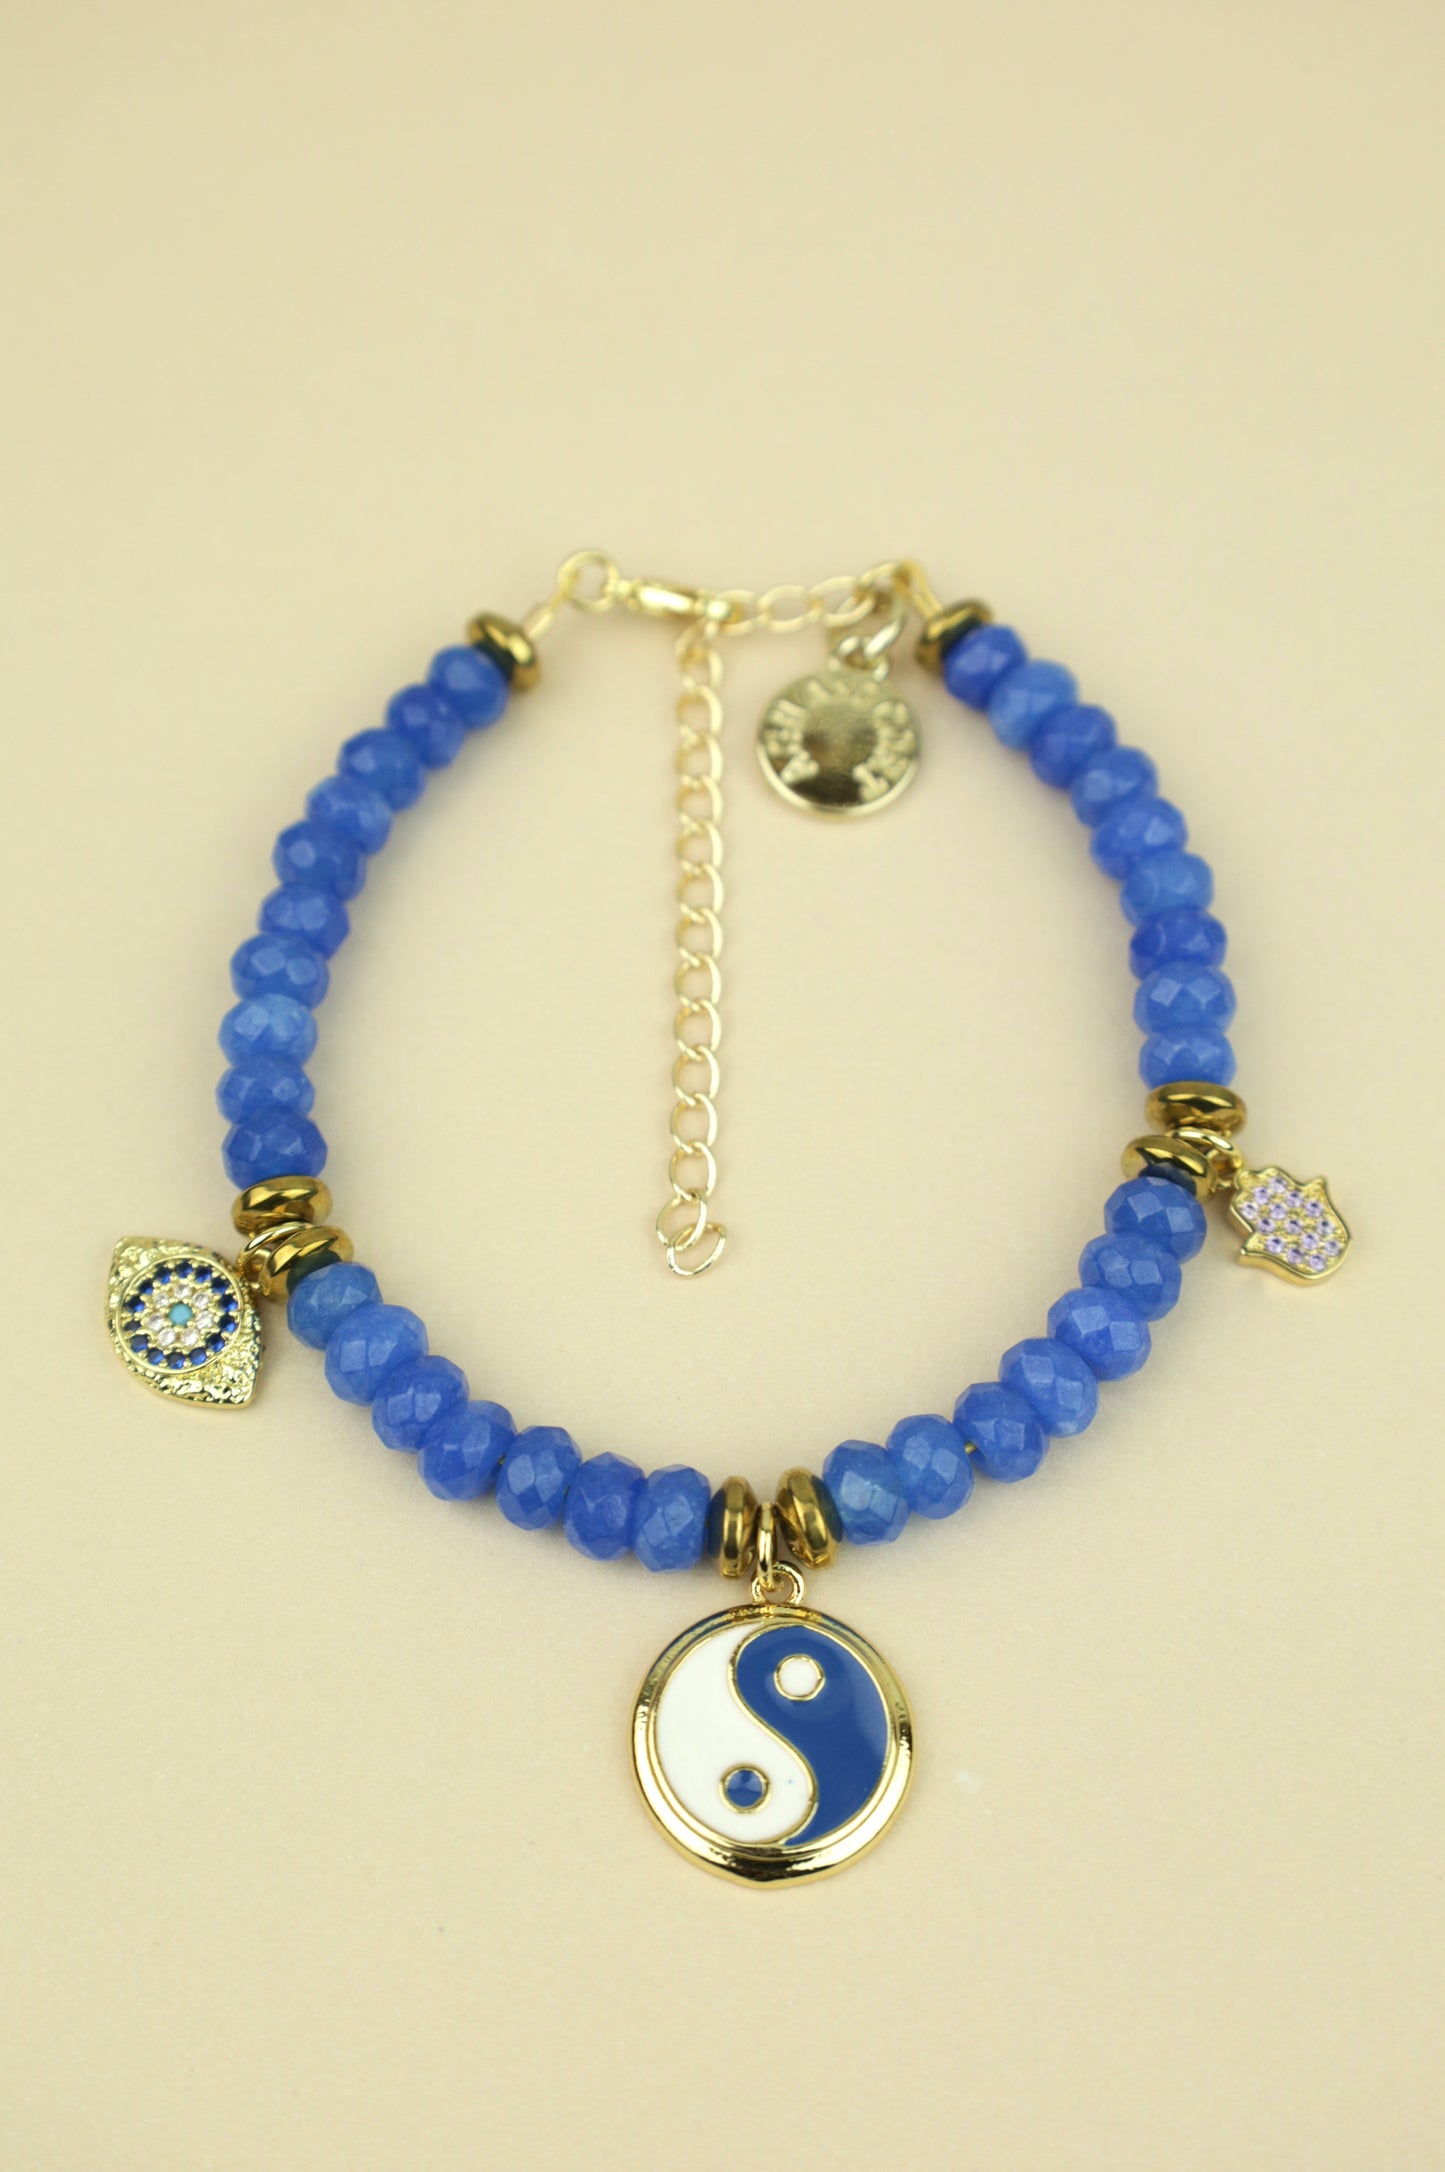 Cobalt Blue Jade Beaded Charm Bracelet